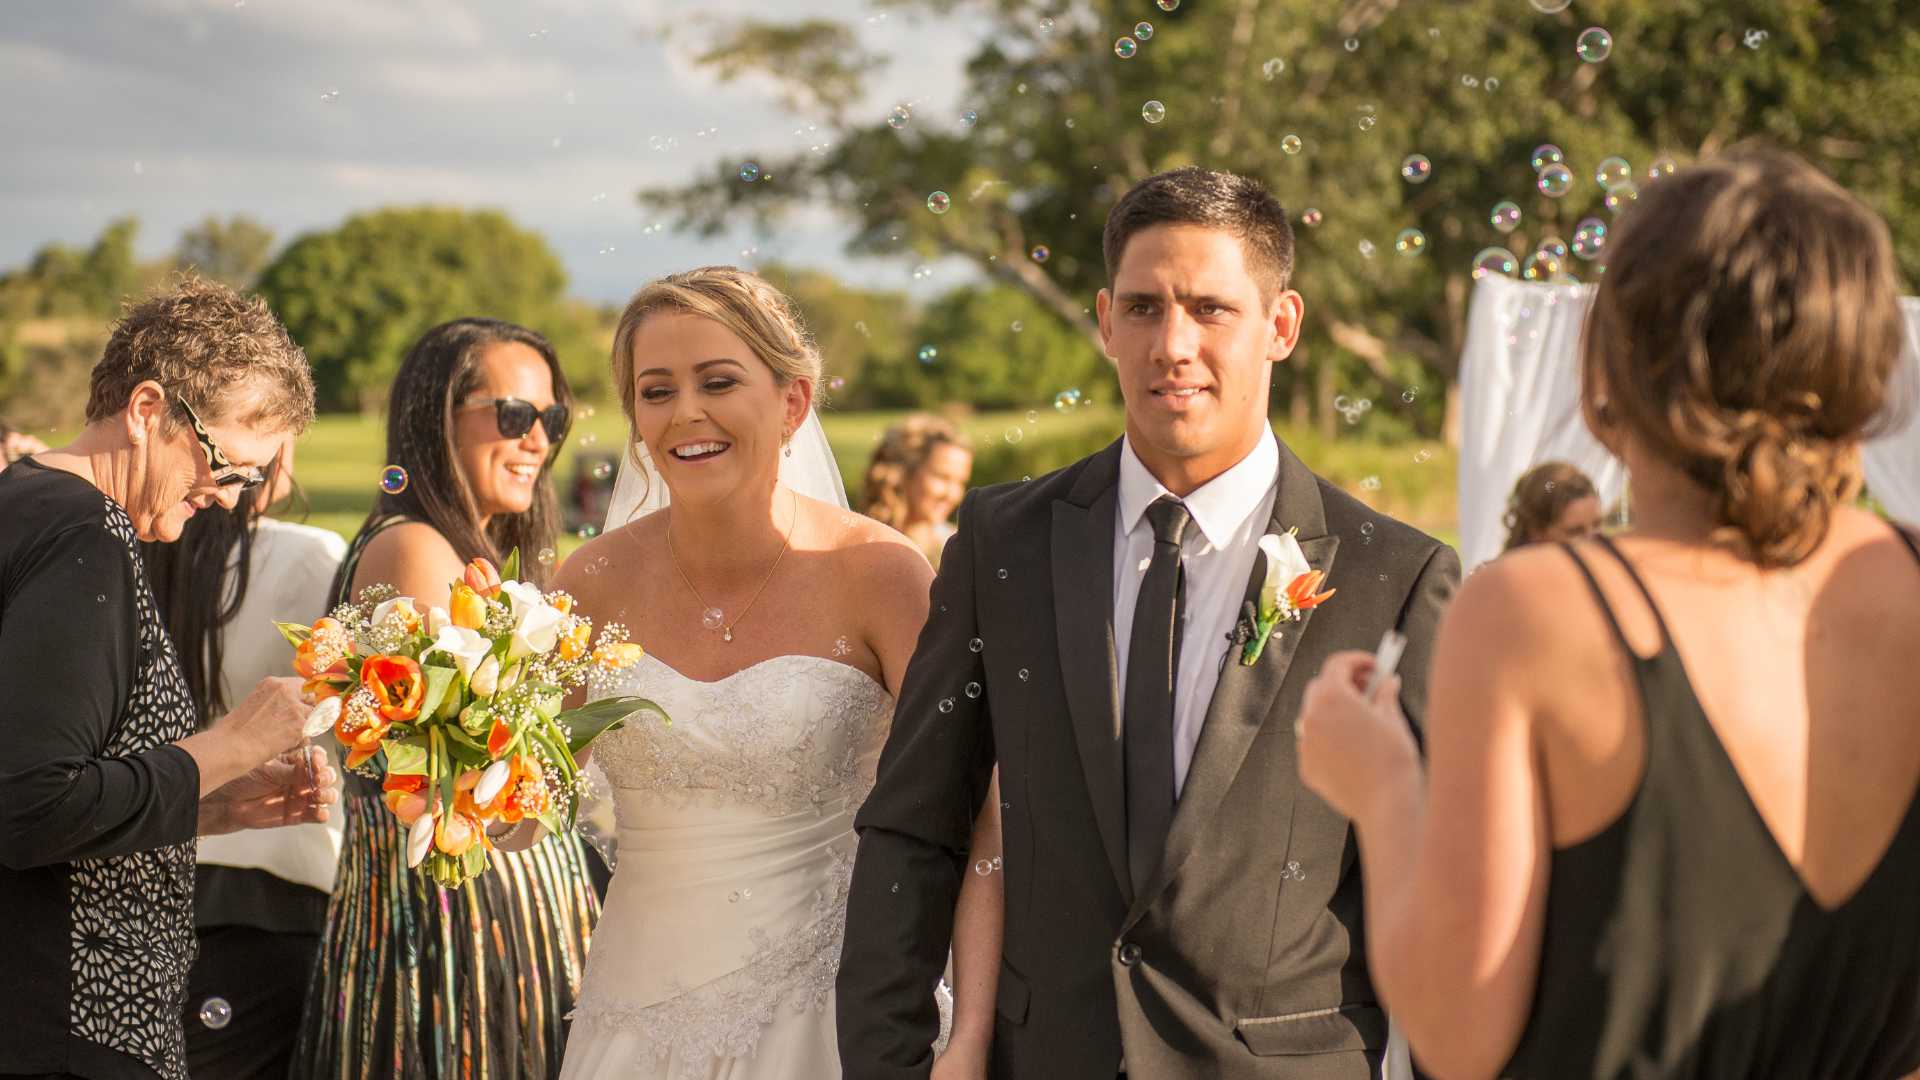 Top 9 Unique Wedding Ceremony Exit Send-Off Ideas